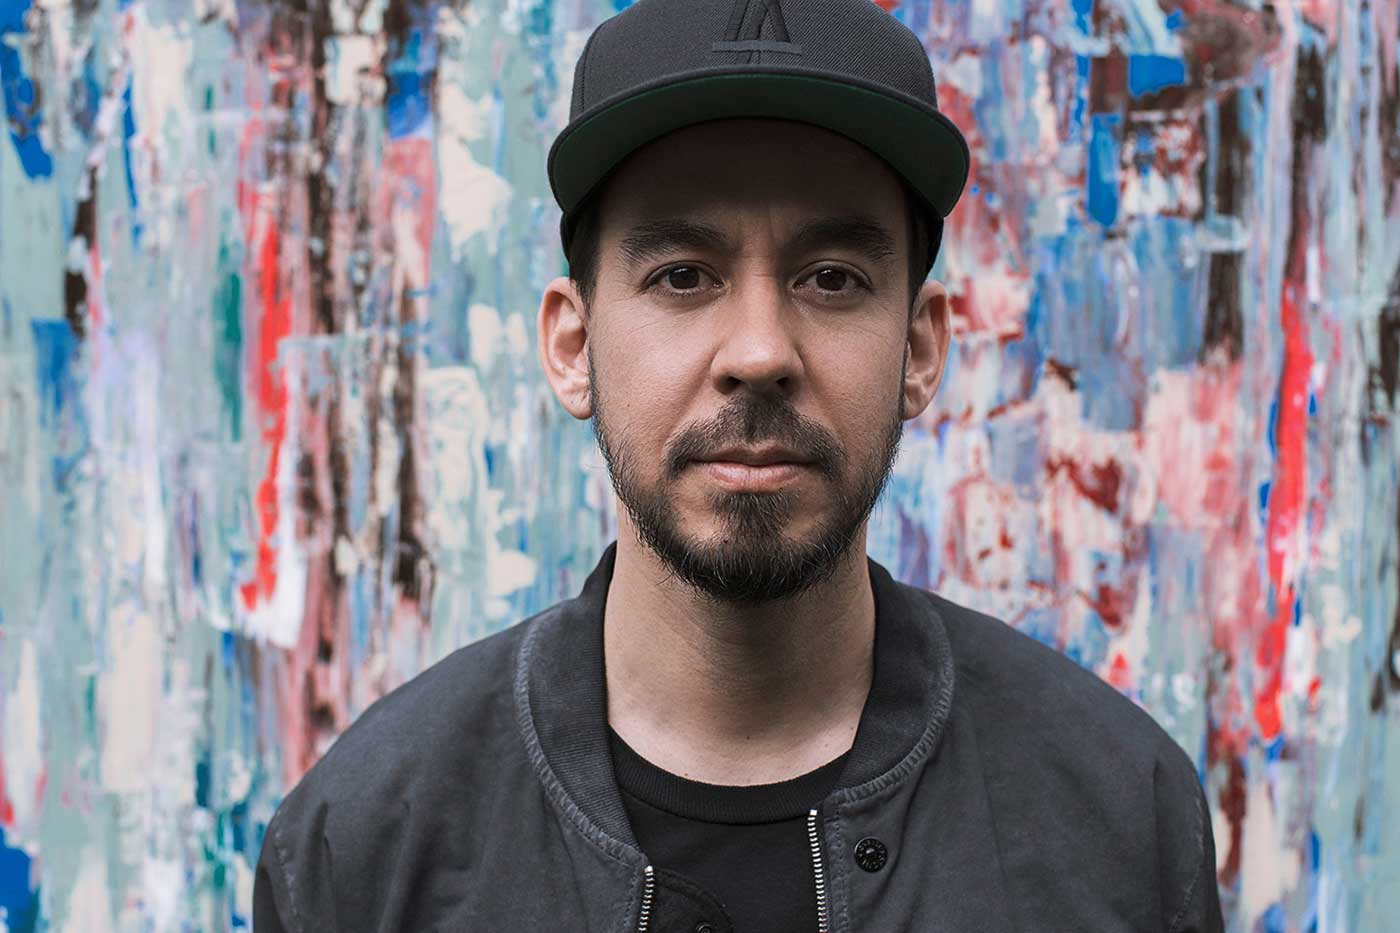 Mike Shinoda (Linkin Park) participa en la banda sonora de “Scream VI”